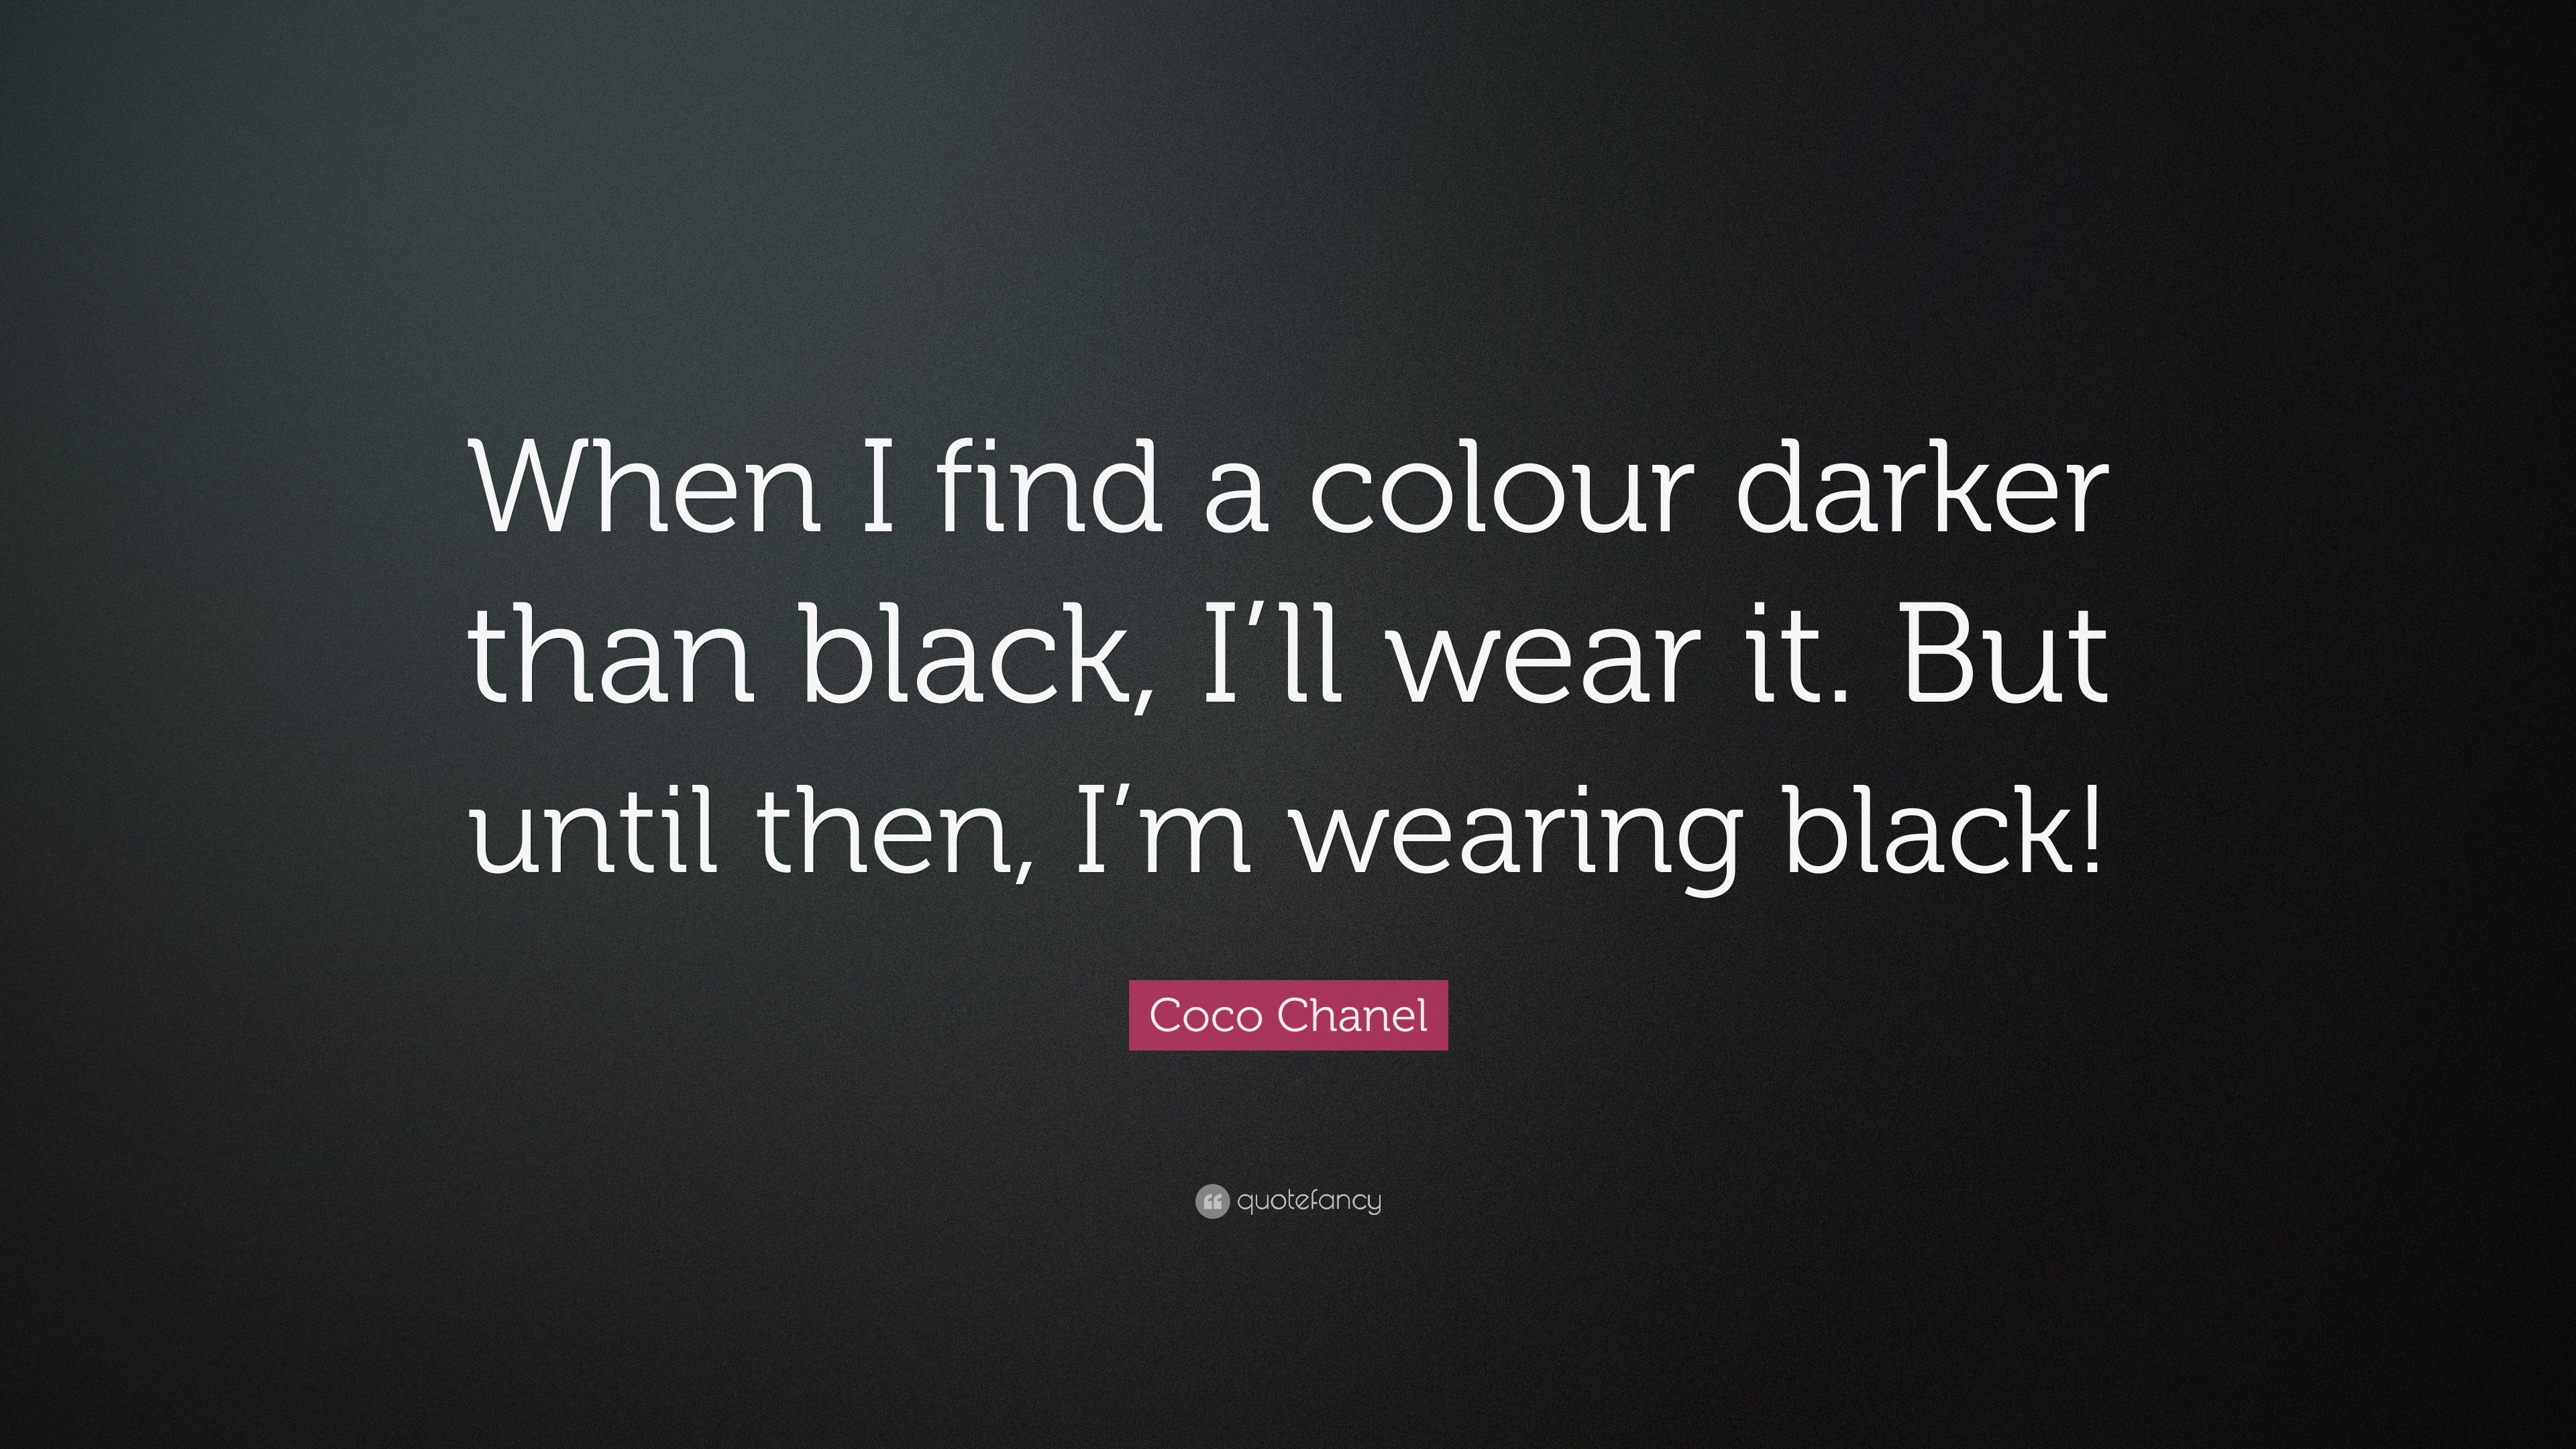 coco chanel black dress quote